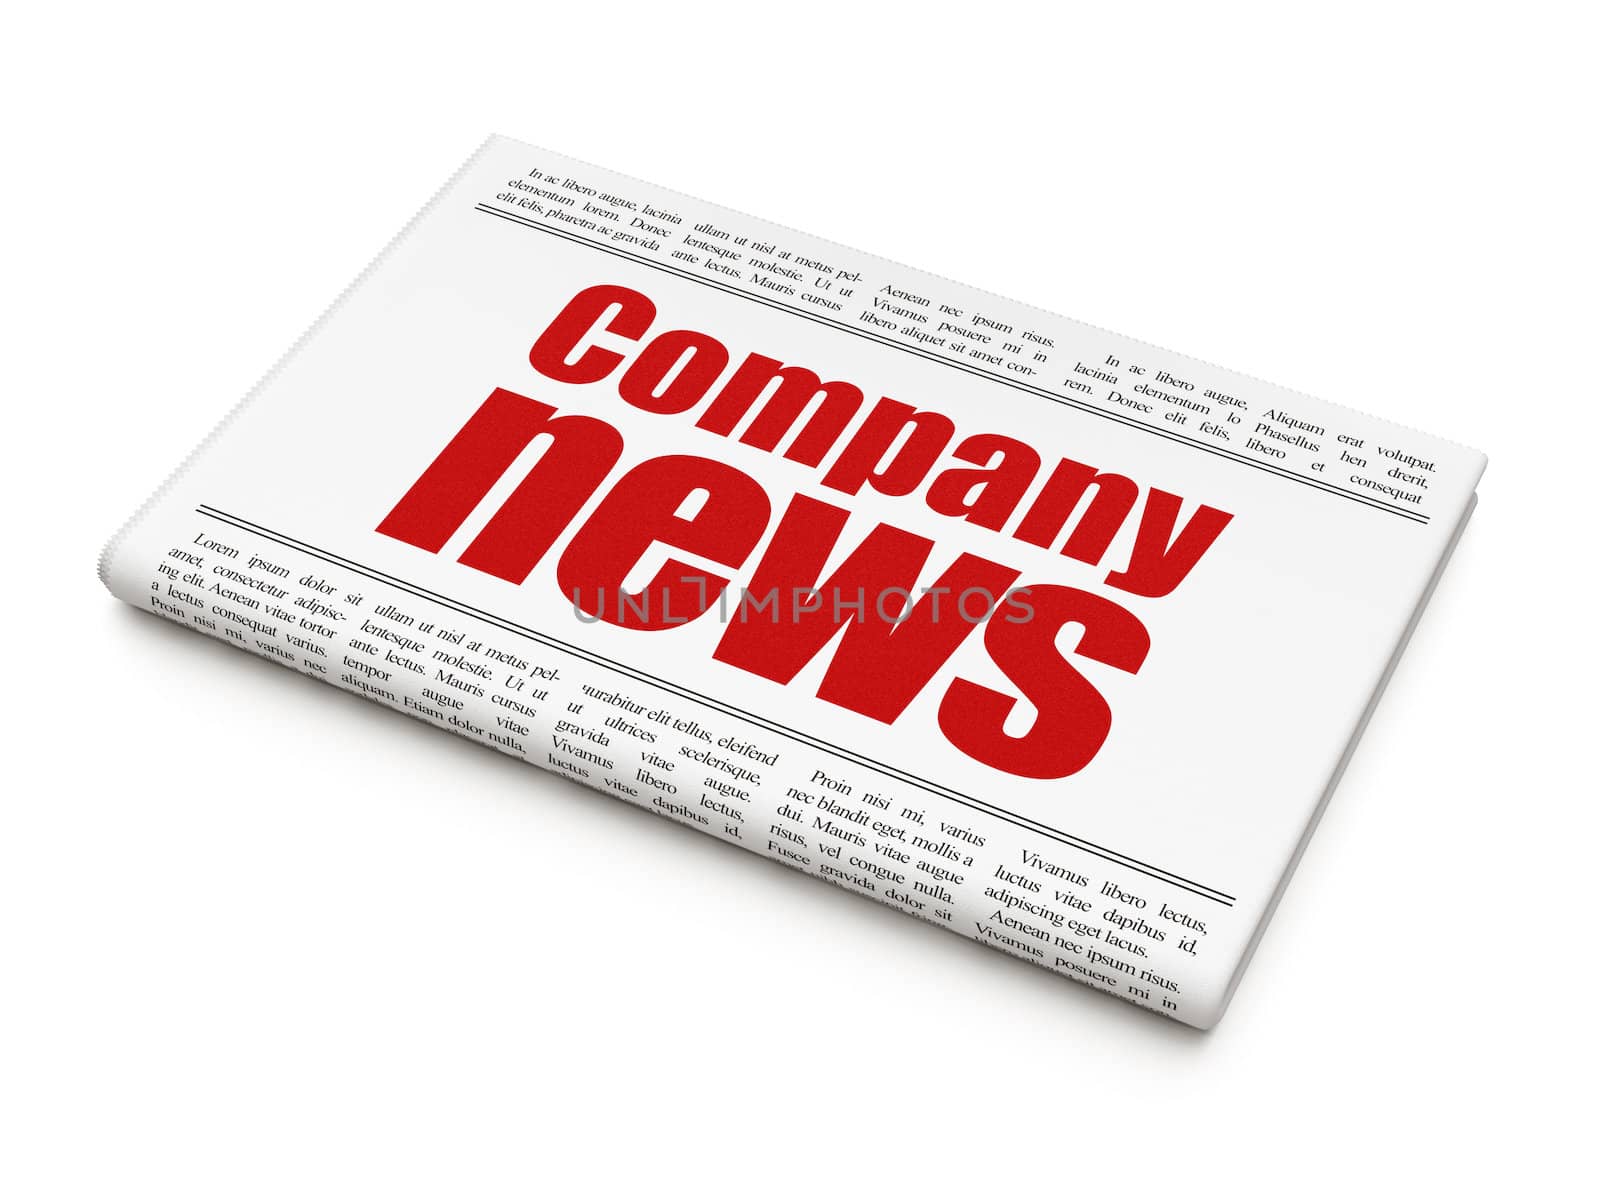 News news concept: newspaper headline Company News by maxkabakov